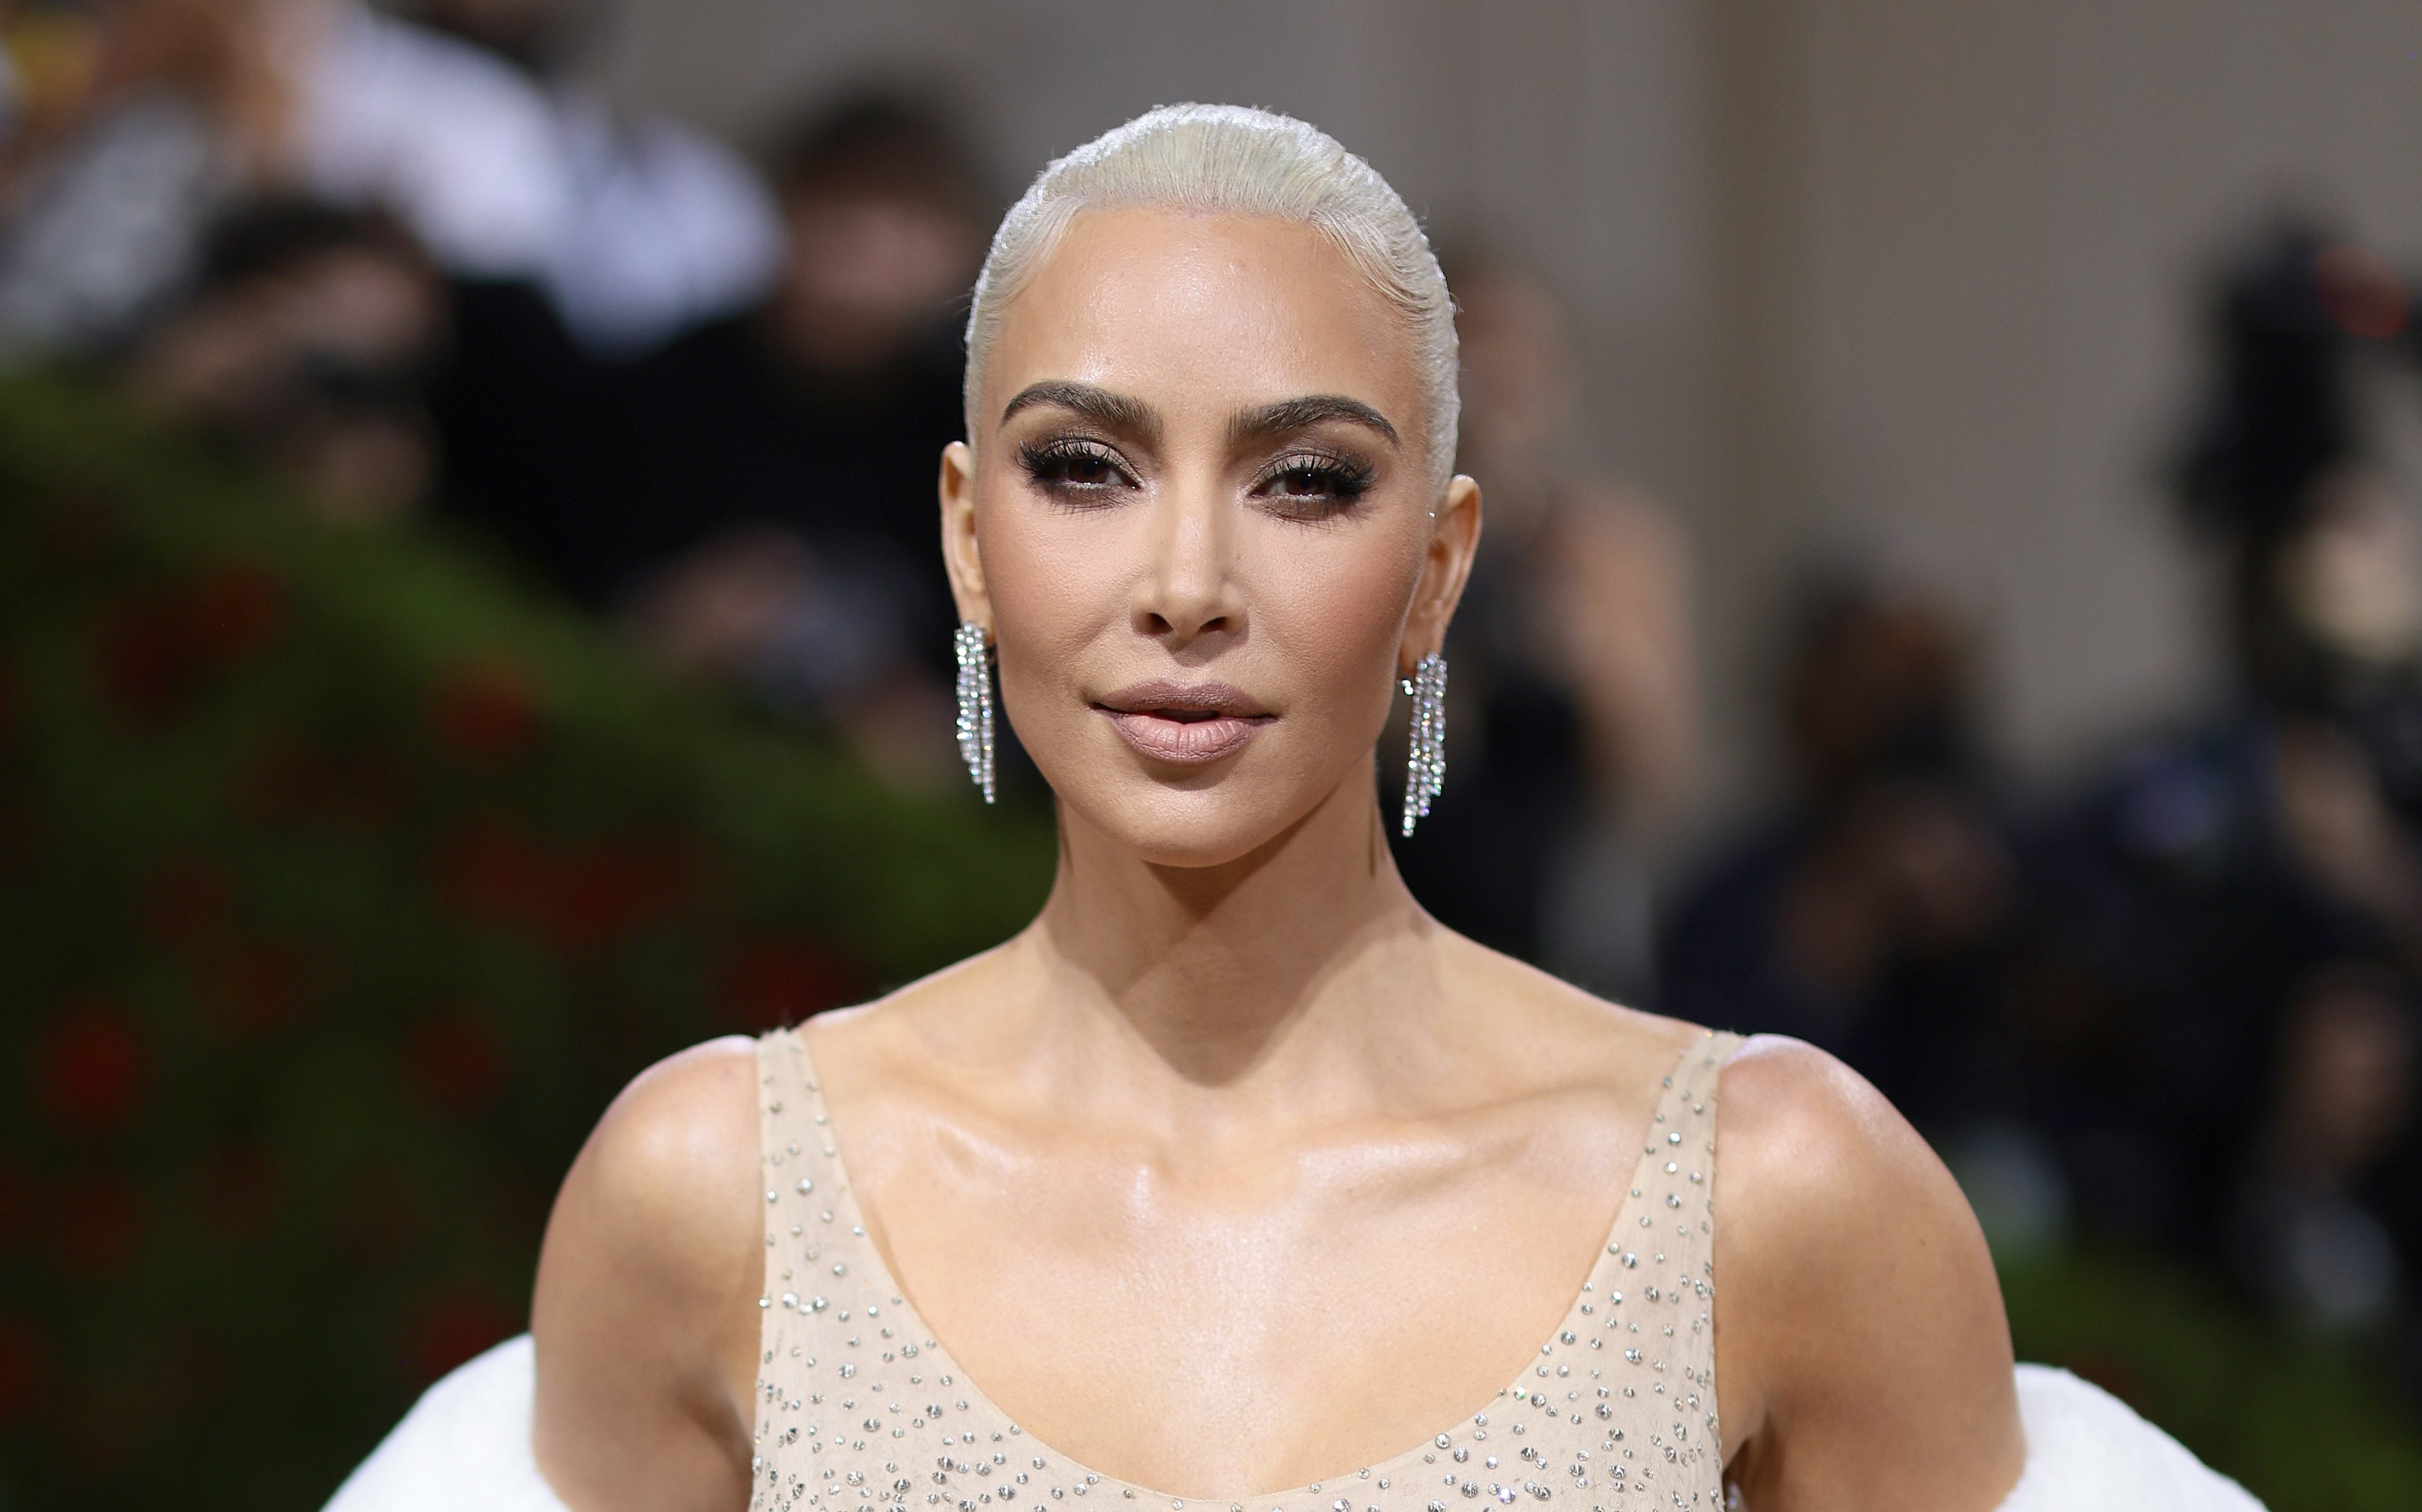 Un representante de Kardashian dijo que la celebridad no quería prolongar el asunto